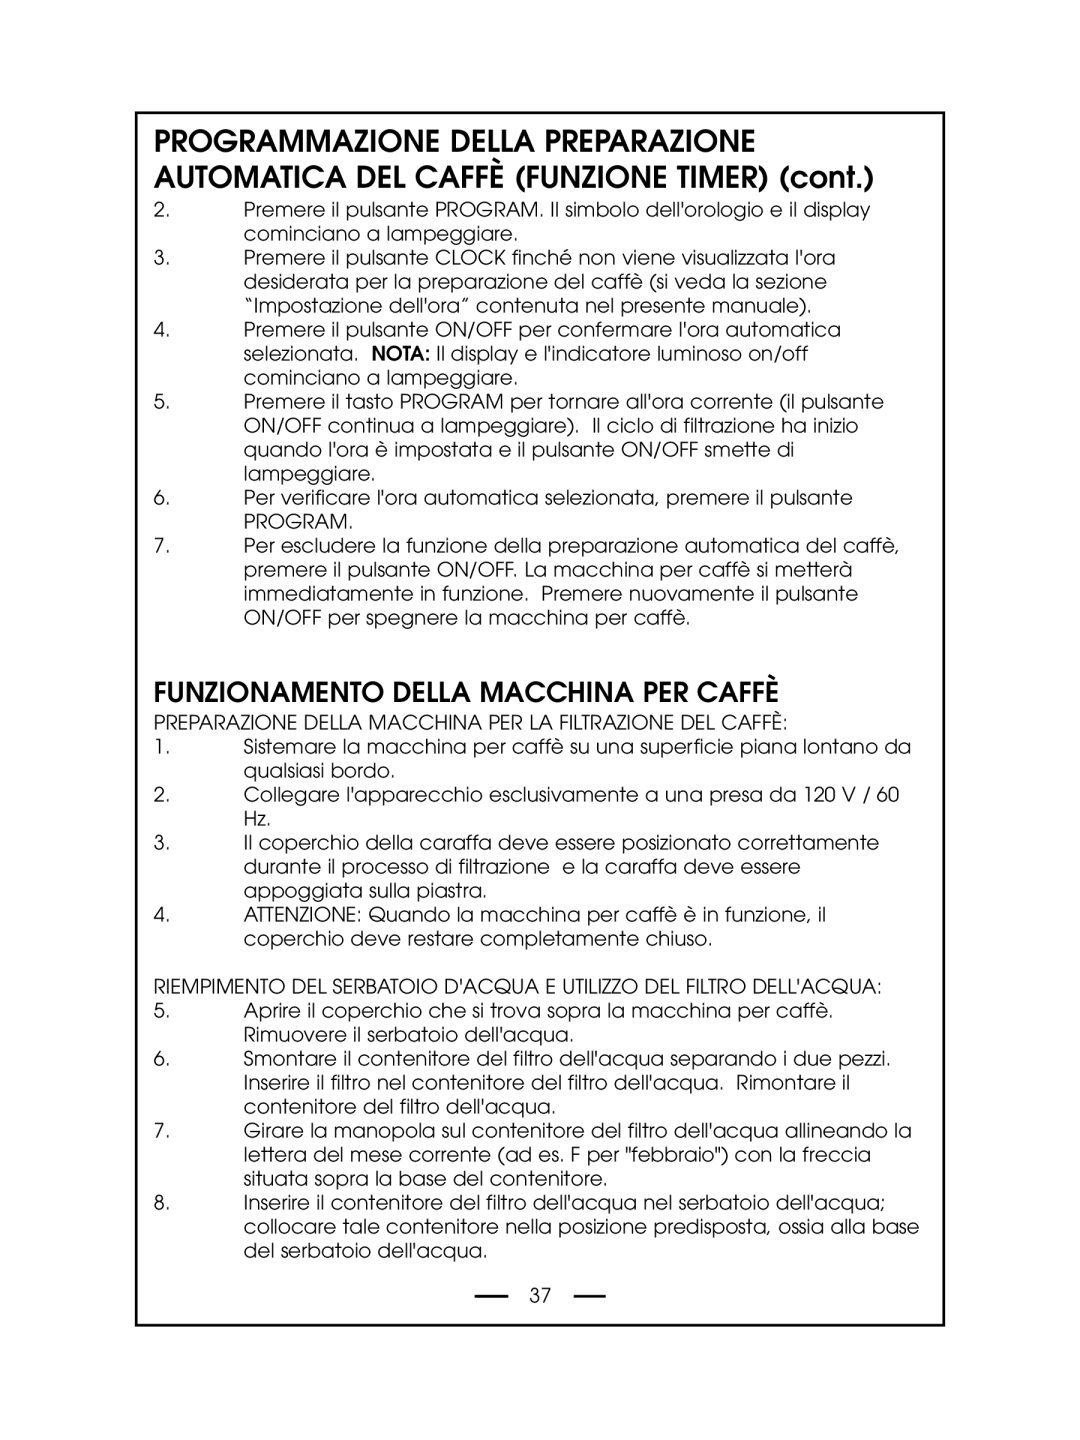 DeLonghi DCM485 instruction manual Funzionamento Della Macchina Per Caffè 